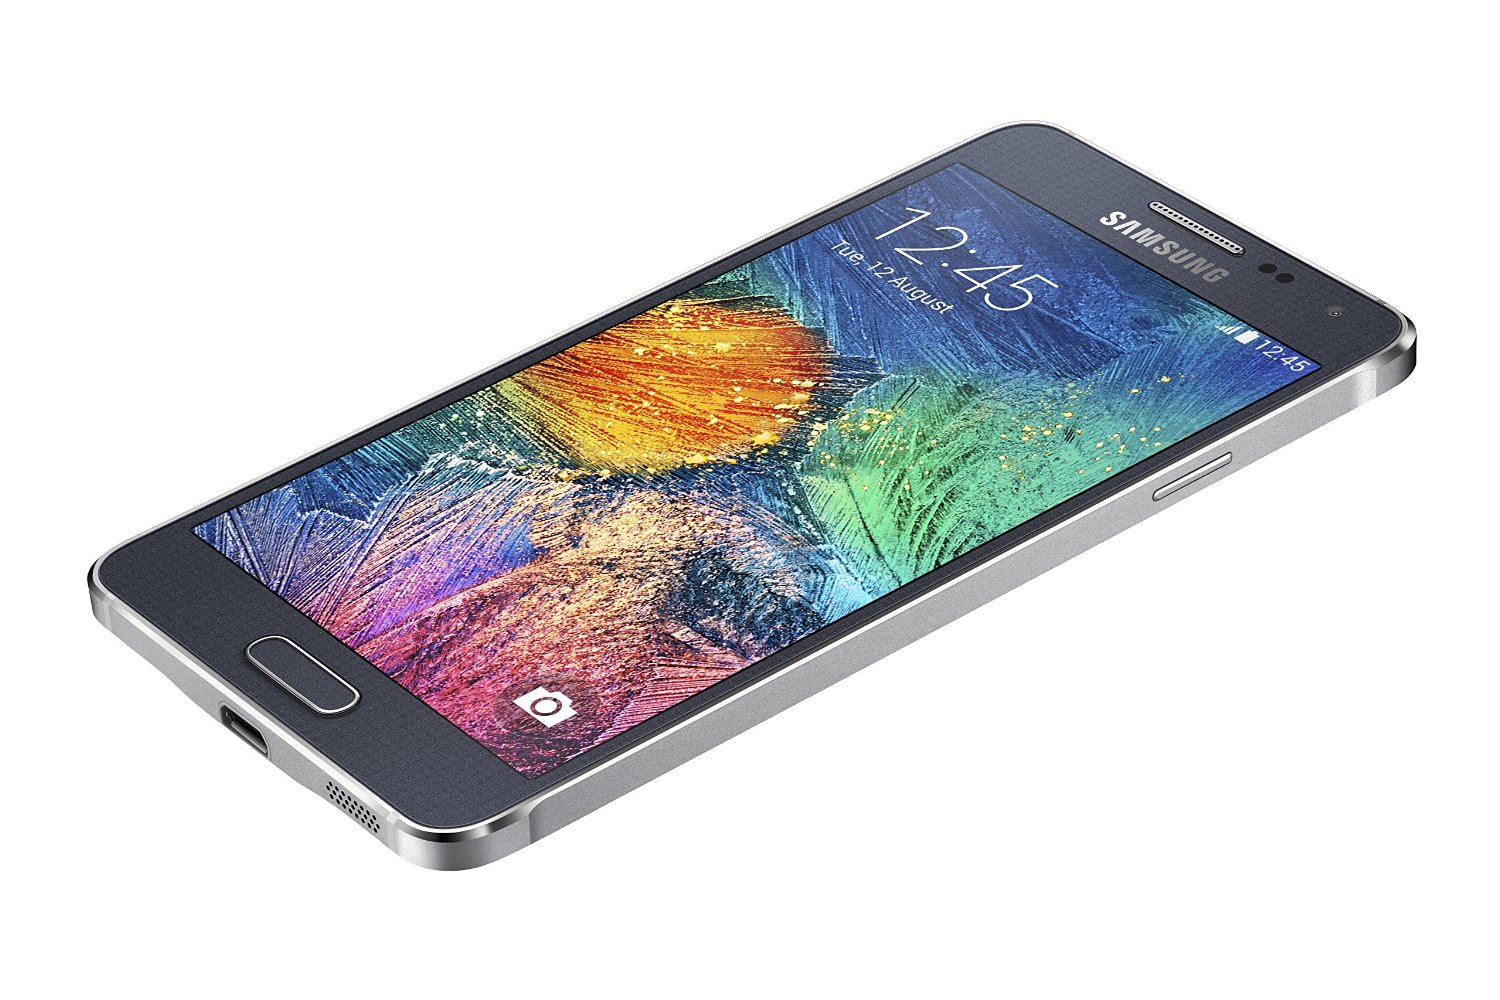 Samsung Galaxy A21s 3 32gb Красный